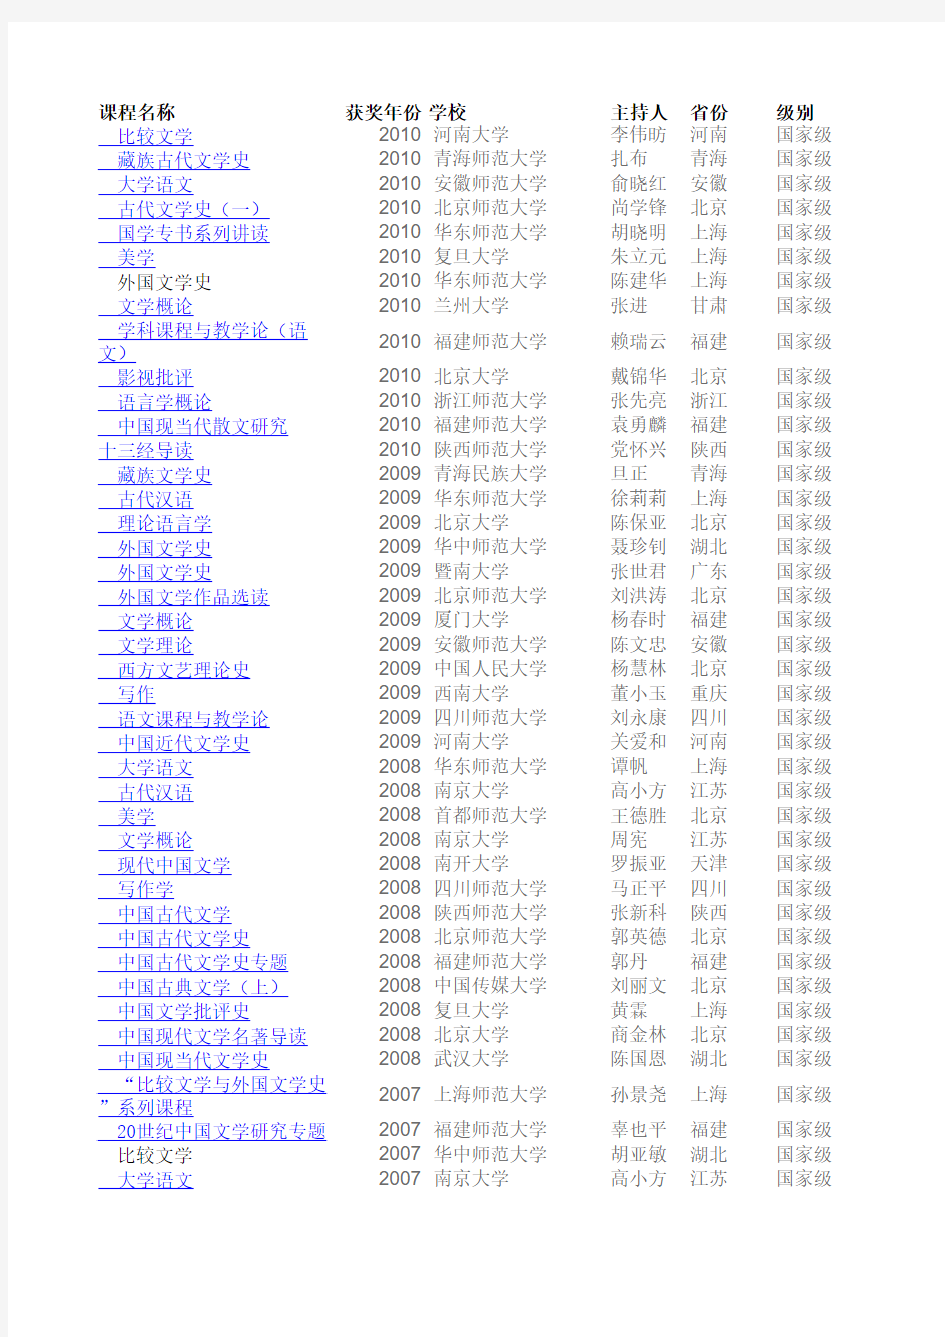 中国语言文学类(国家级)精品课程总汇(2003-2010年80门)